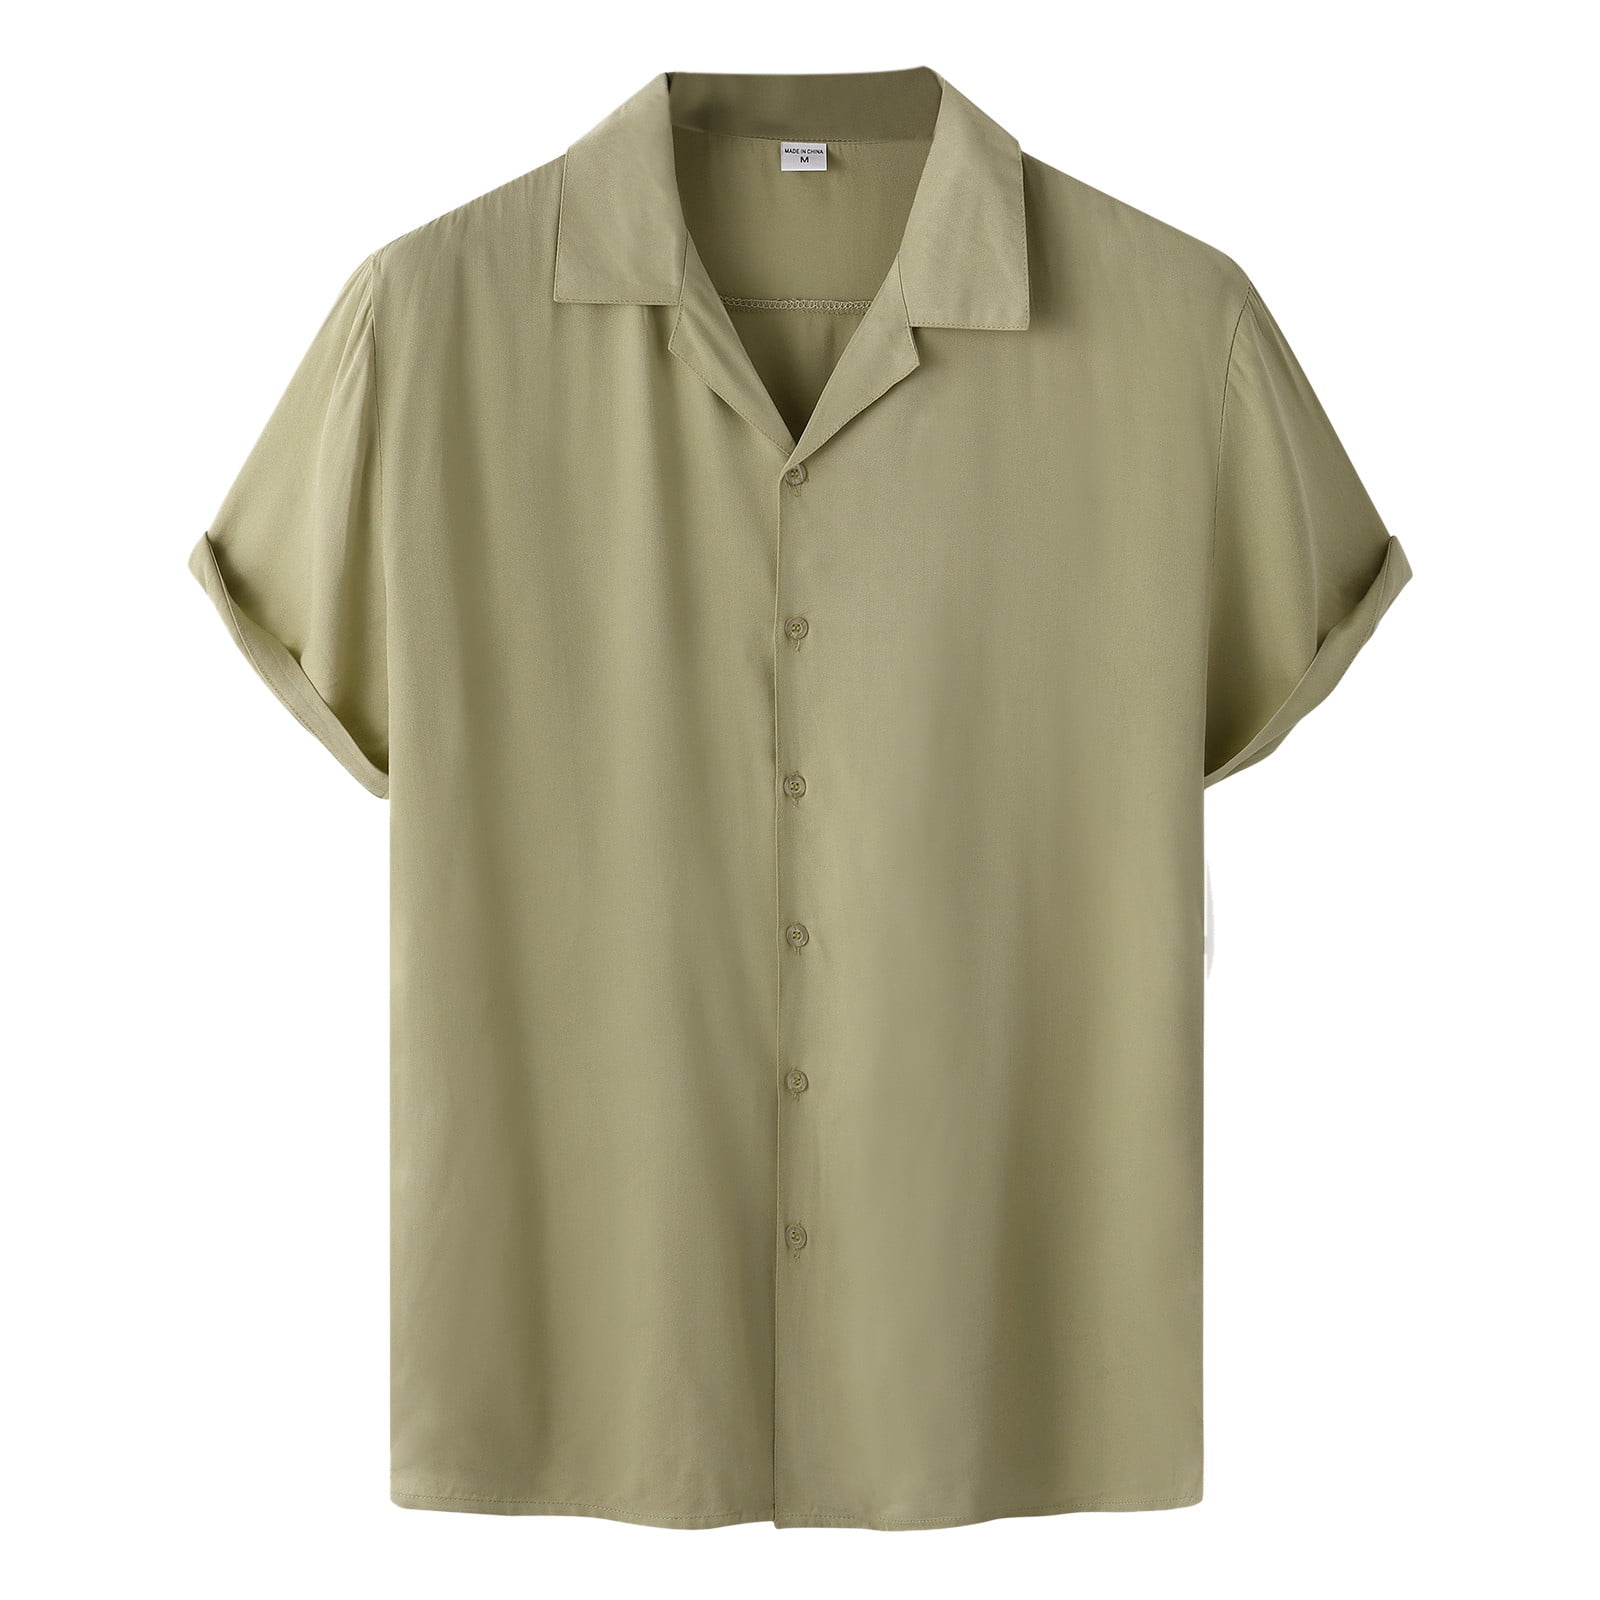 Entyinea Mens Shirts Short Sleeve Linen Shirt Summer Beach Shirts ...